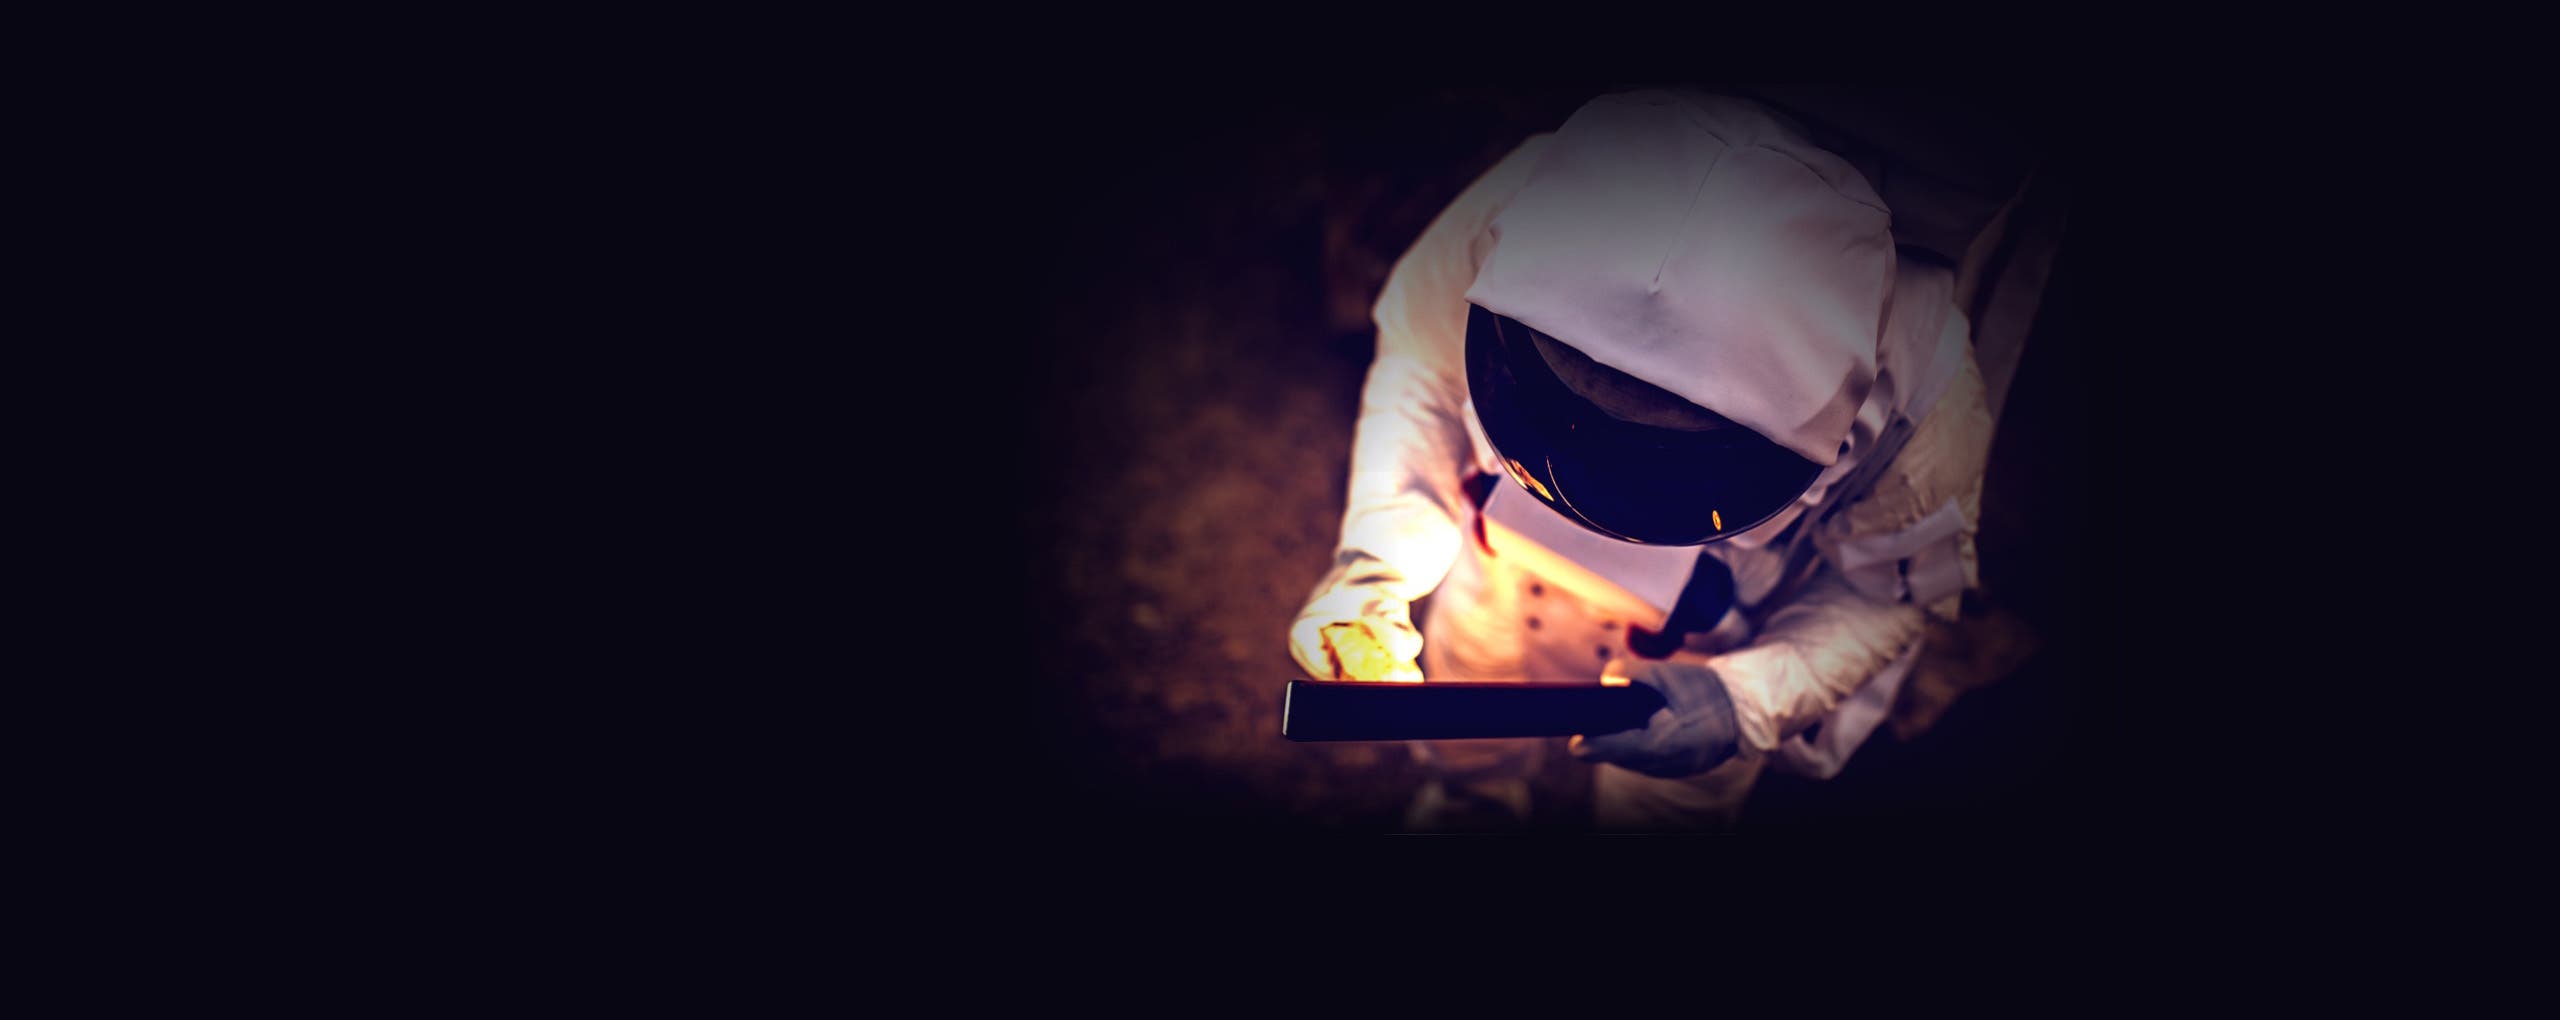   Imagen de fondo de astronauta sosteniendo un objeto iluminado